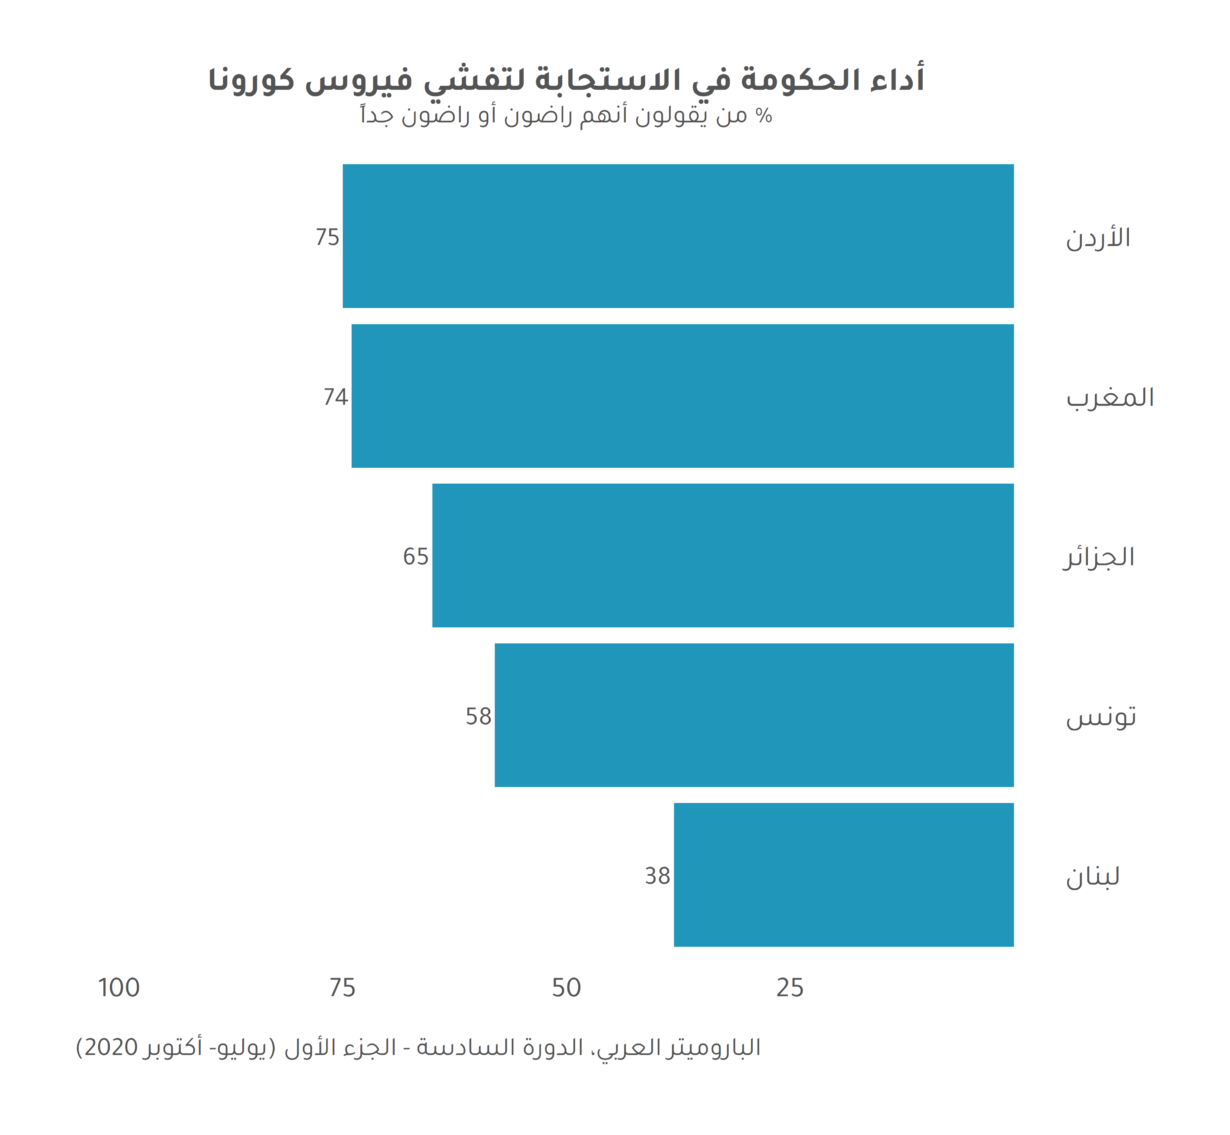 تقييم العرب لتعامل حكوماتهم مع جائحة كوفيد-19